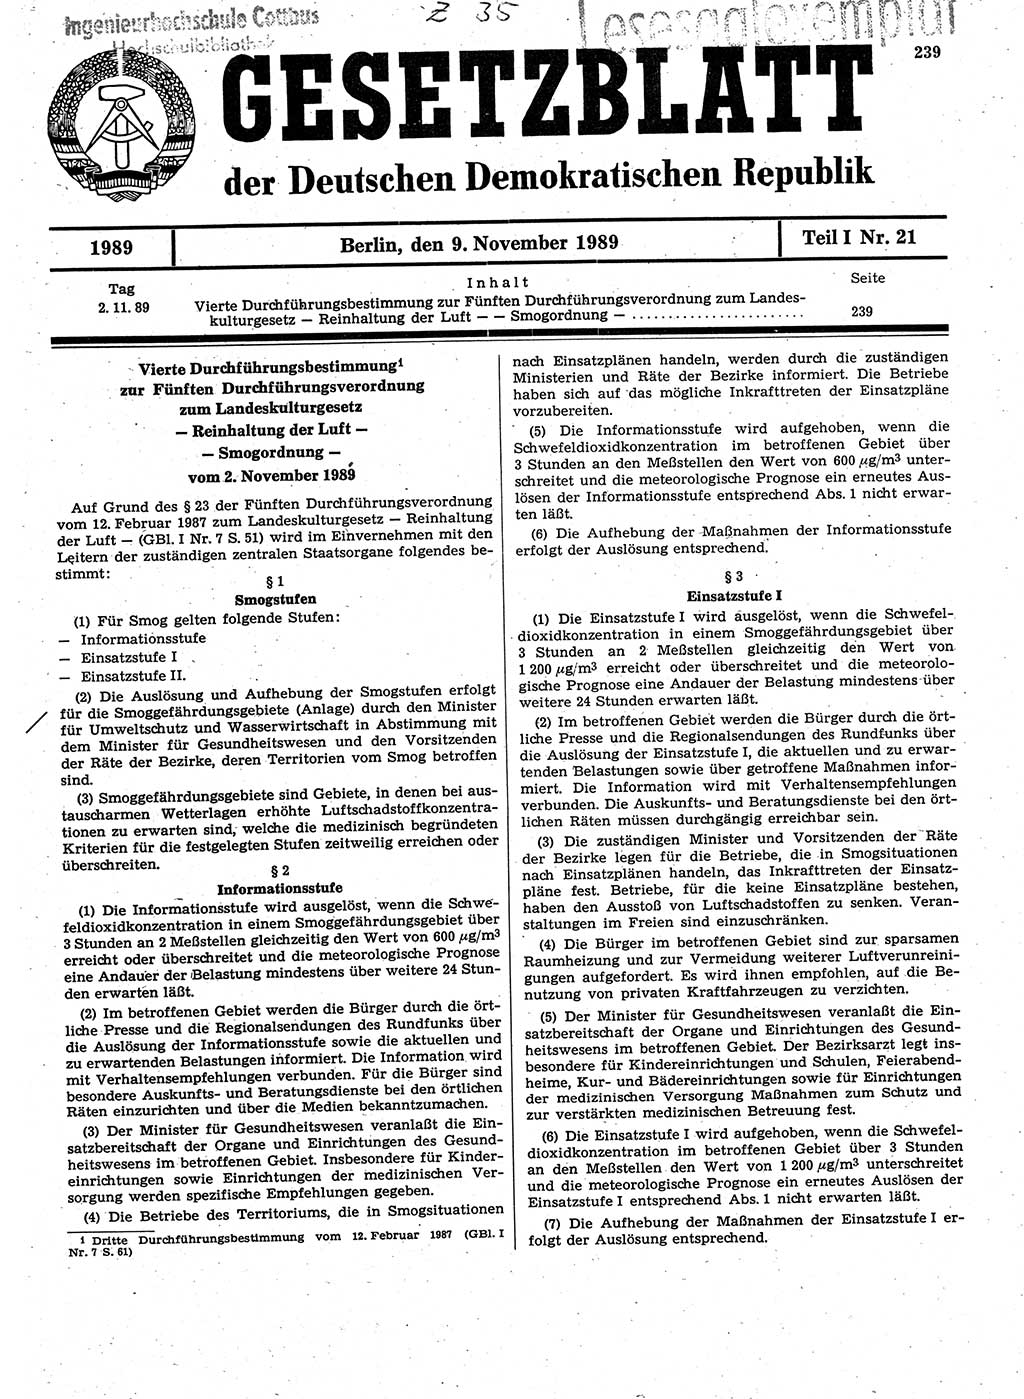 Gesetzblatt (GBl.) der Deutschen Demokratischen Republik (DDR) Teil Ⅰ 1989, Seite 239 (GBl. DDR Ⅰ 1989, S. 239)